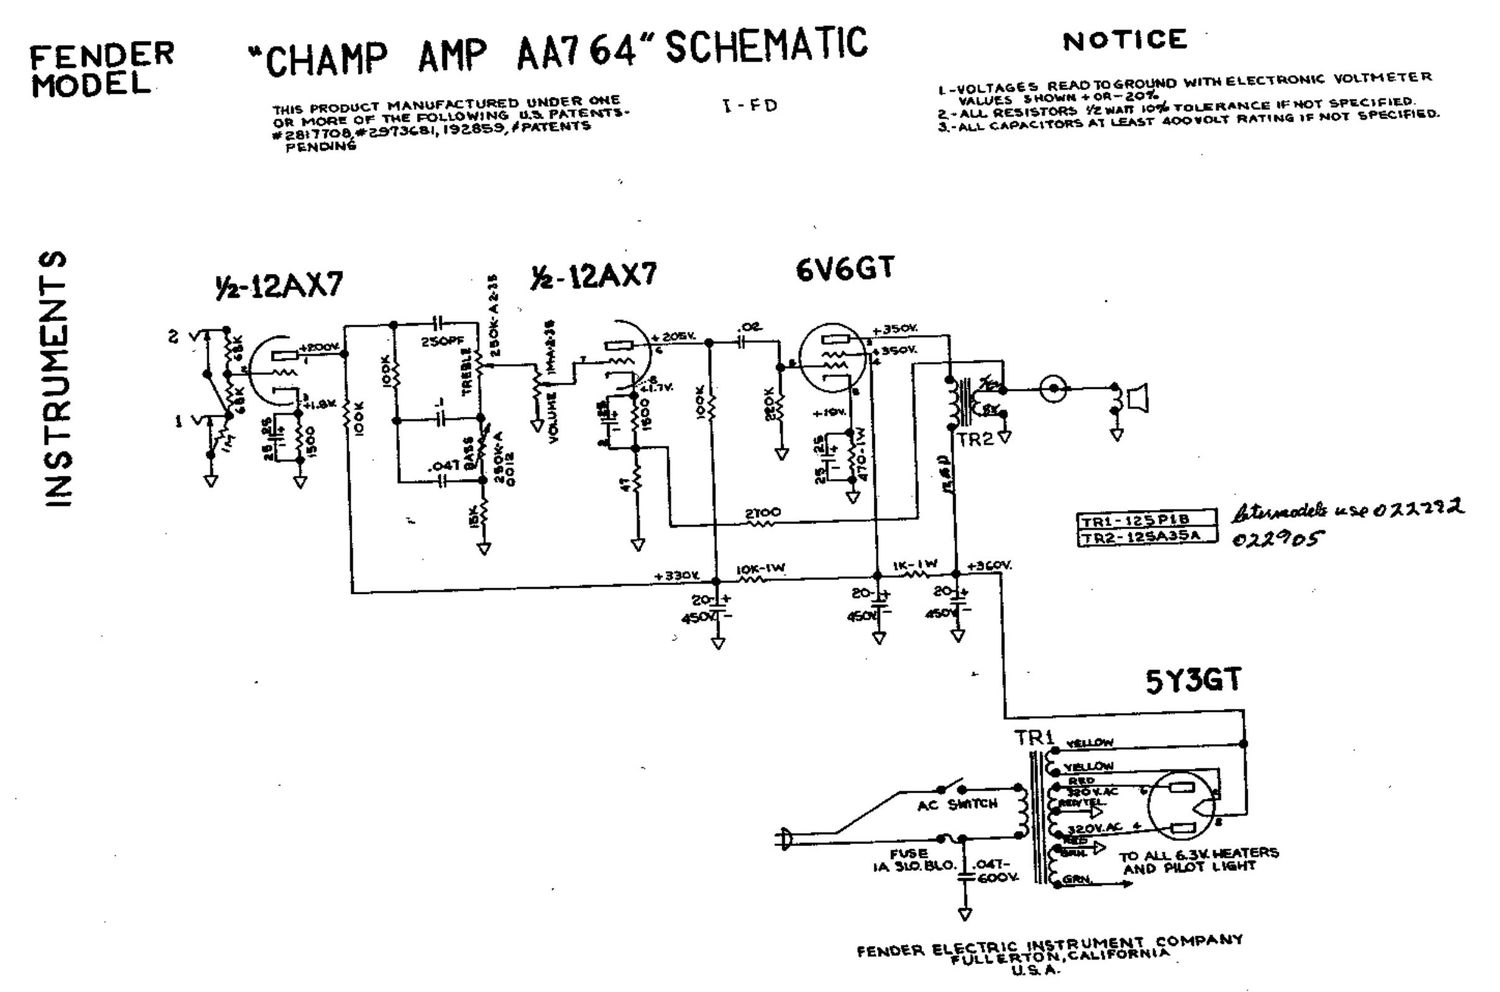 fender champ aa764 schematic